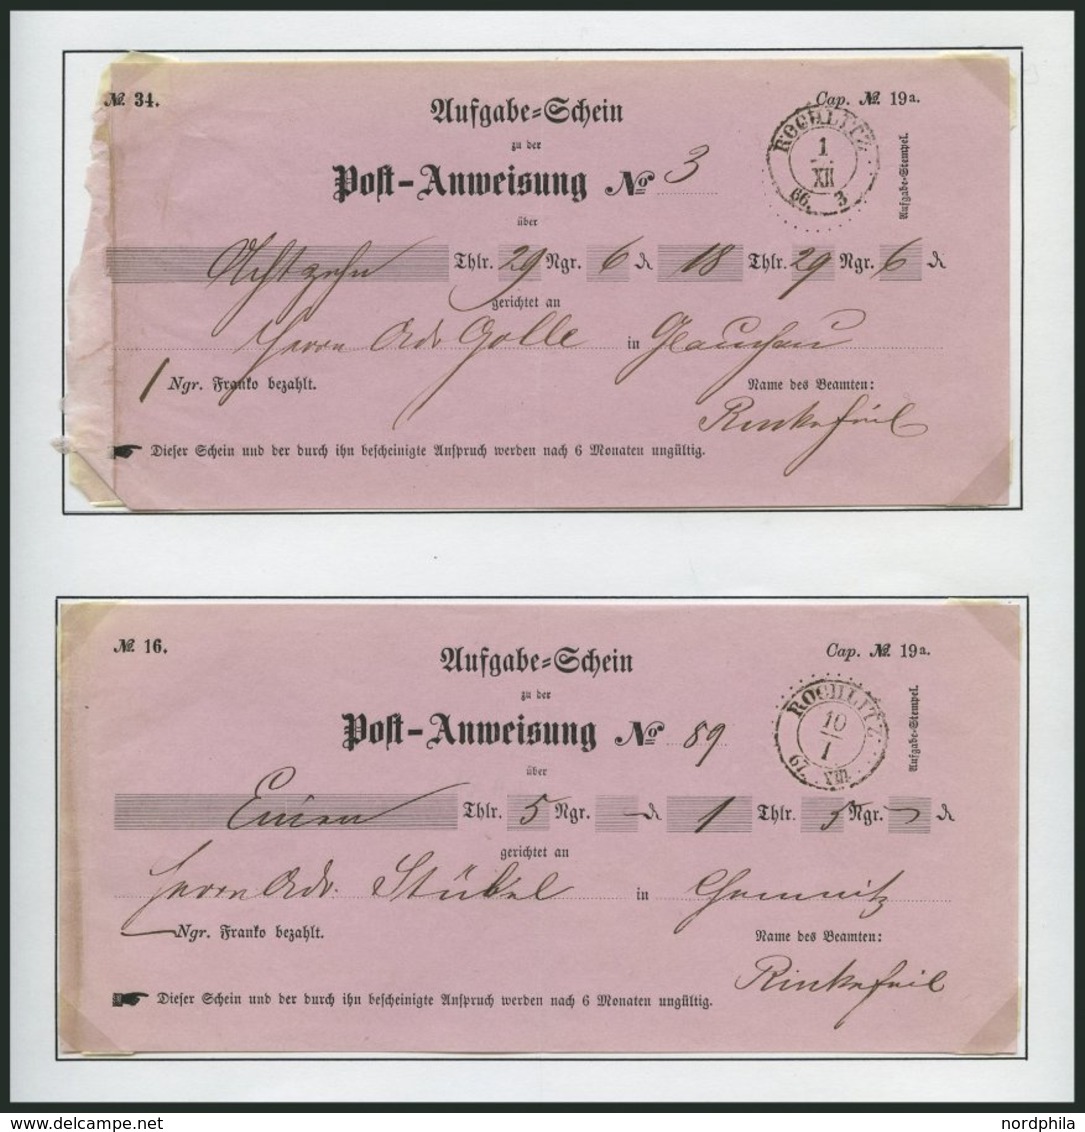 SACHSEN 1827-1866, kleine Sammlung von 10 Postscheinen und einer Postanweisung, Pracht